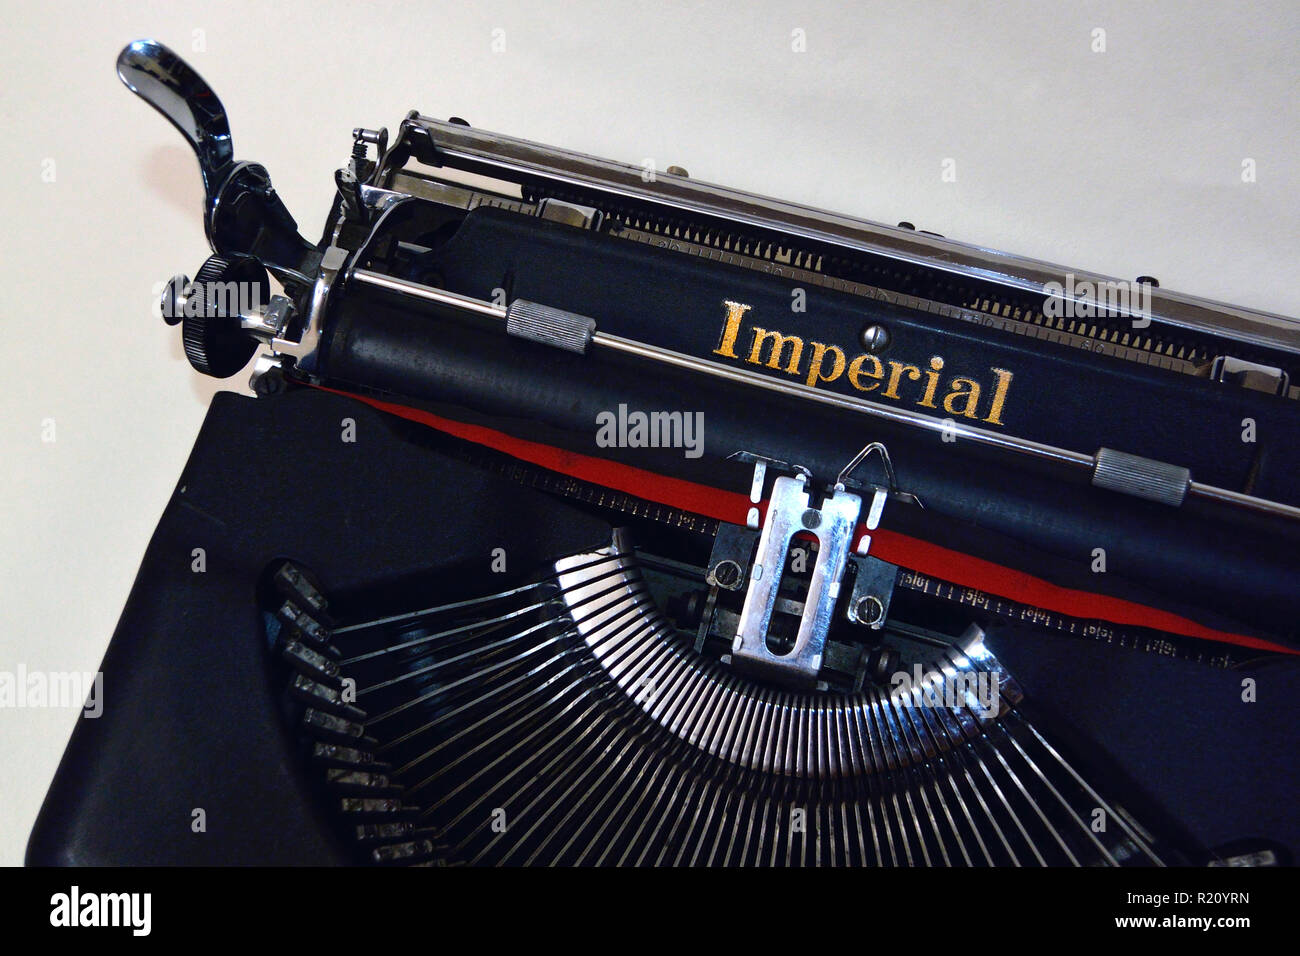 Imperial Die guten Begleiter Modell T tragbare Schreibmaschine, 1941 Vintage Stockfoto